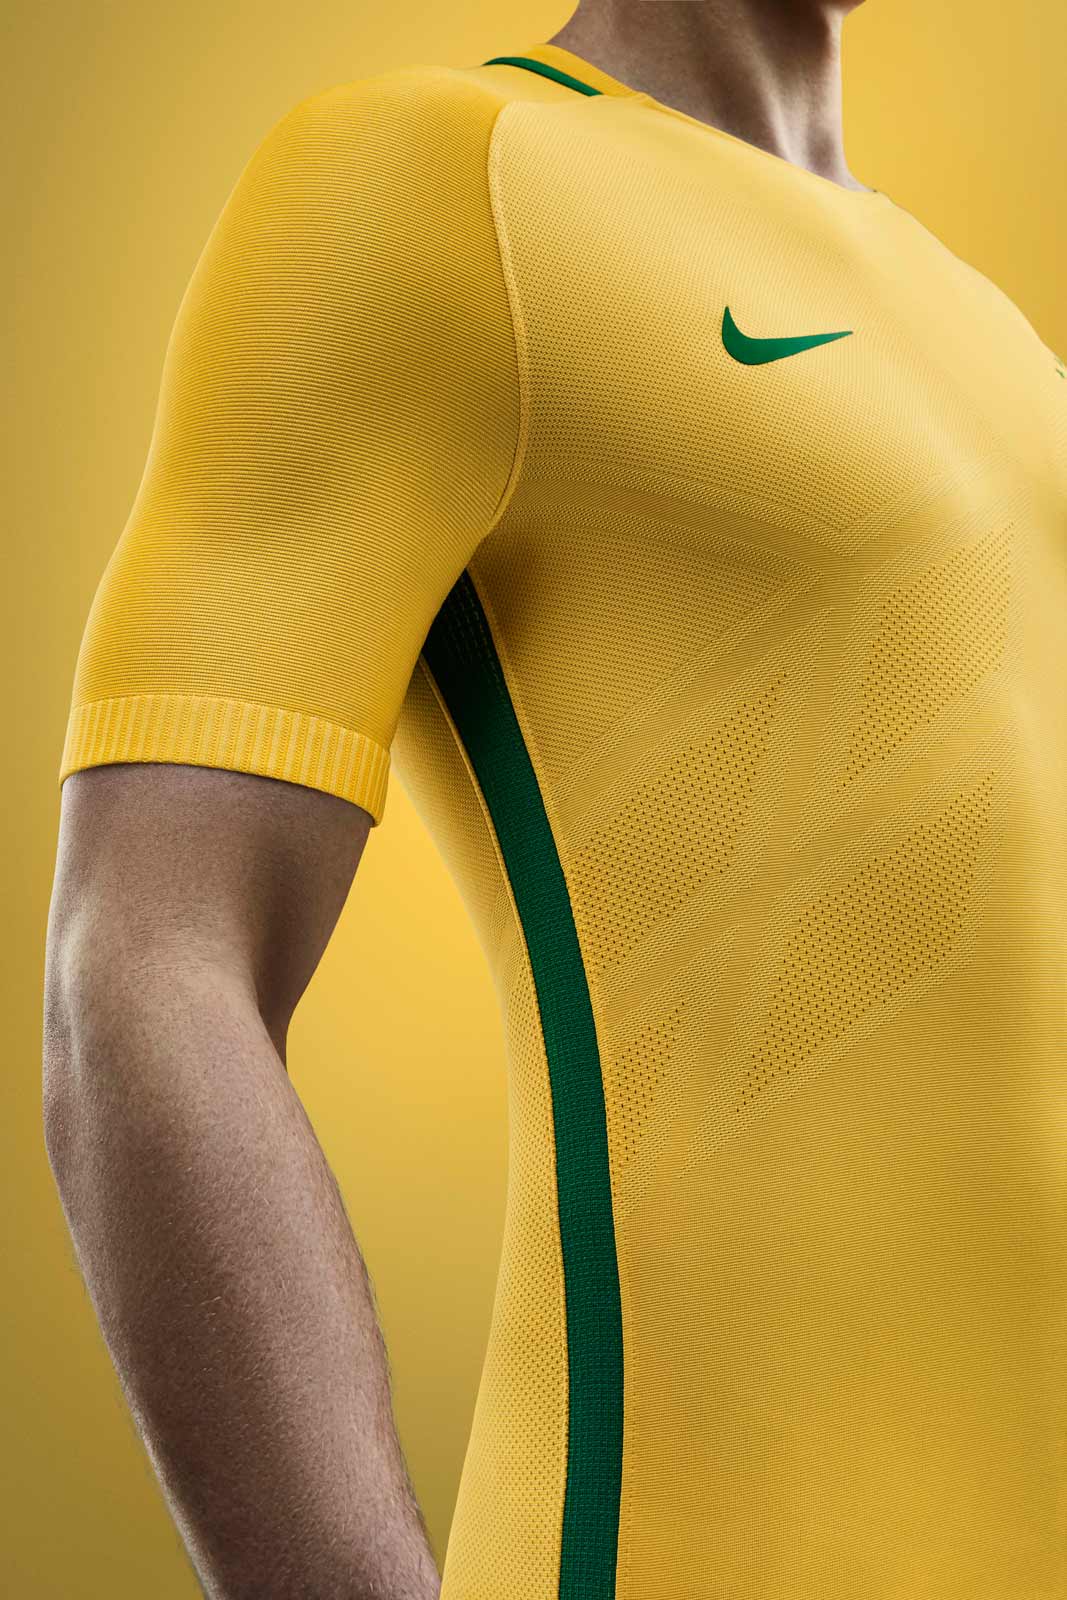 nike-brazil-2016-copa-america-kit-5.jpg